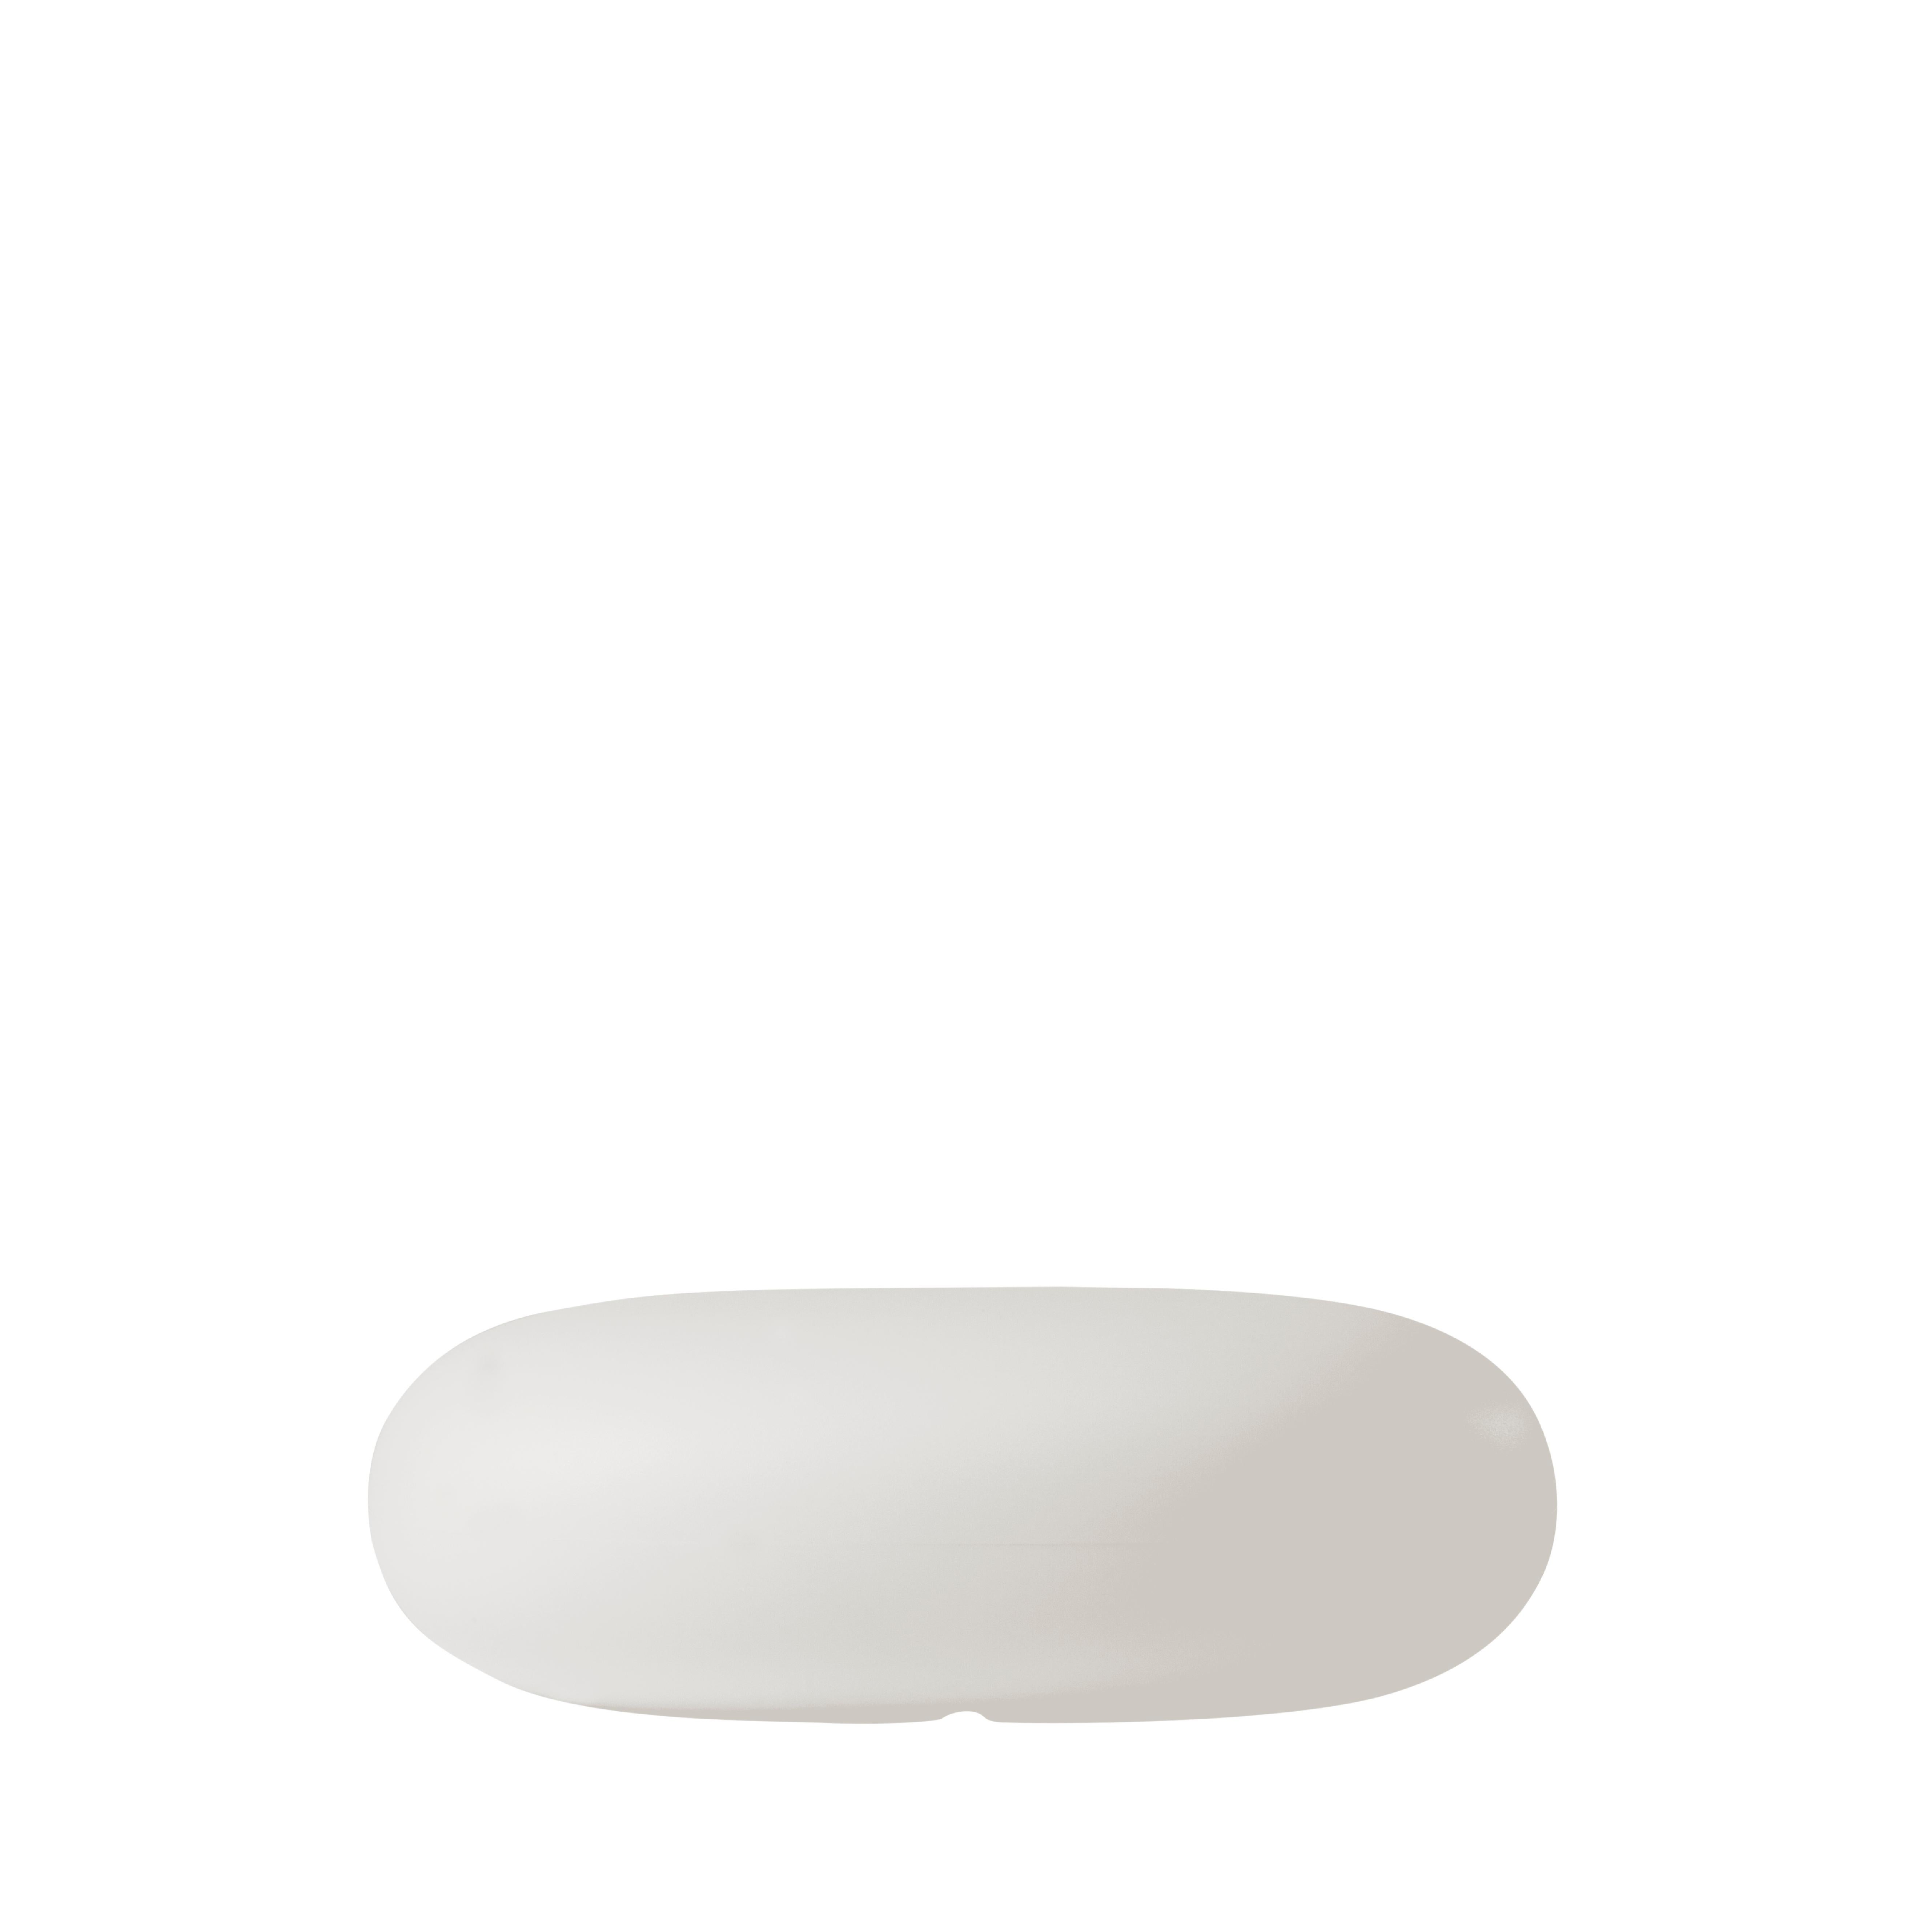 Italian Slide Design Chubby Low Pouf in Milky White by Marcel Wanders For Sale